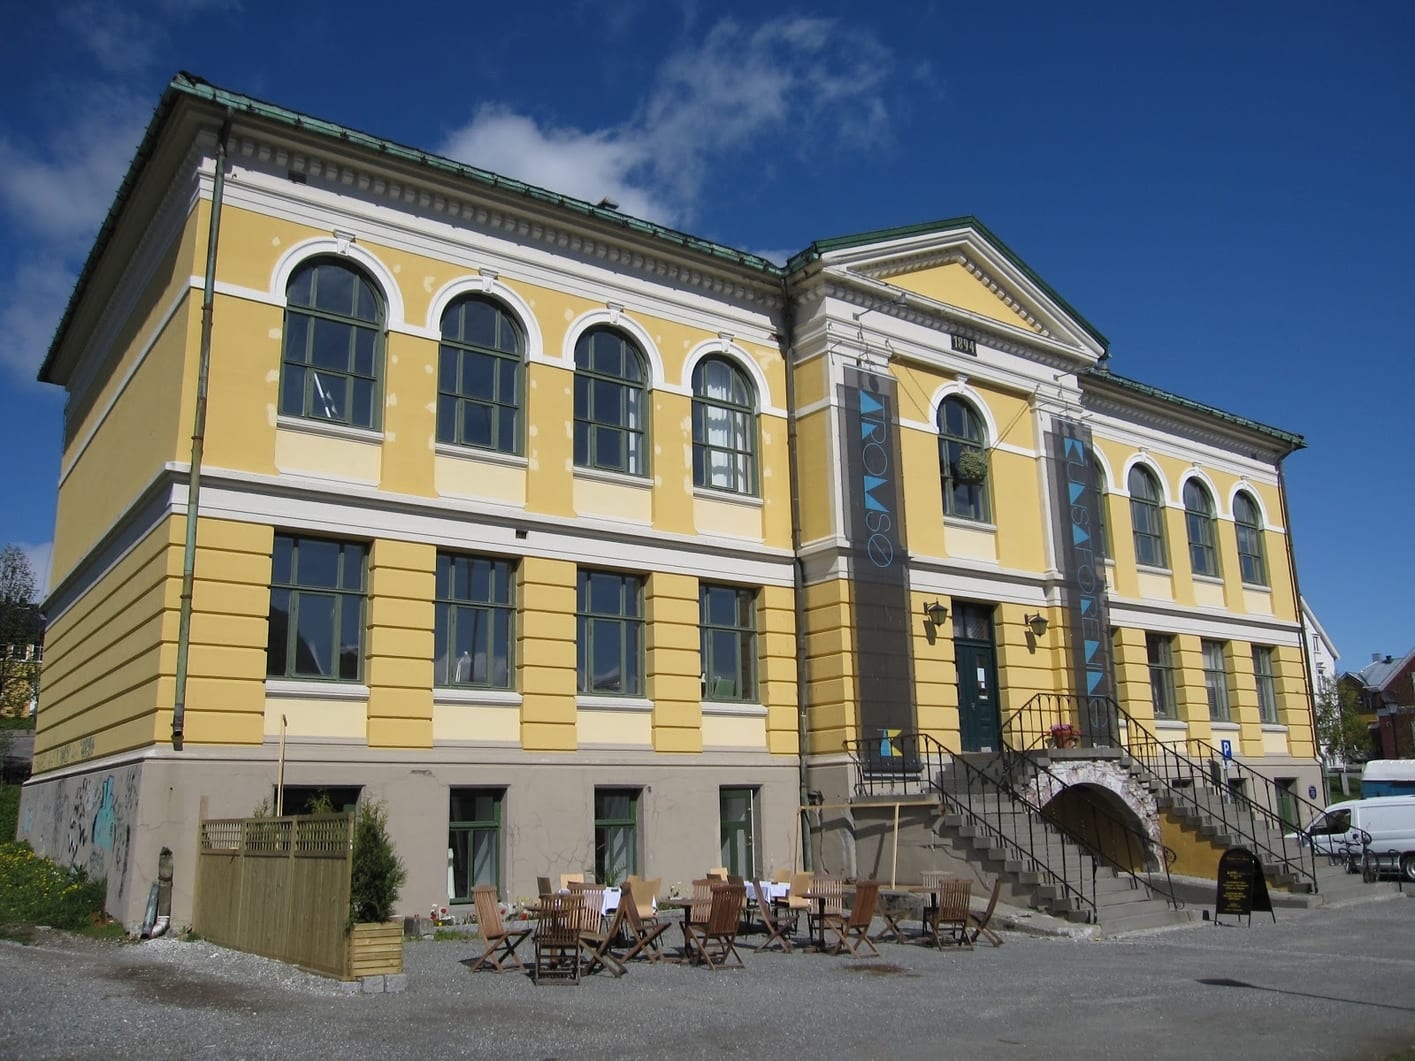 Tromso Center for Contemporary Art, a free Tromso contemporary art museum